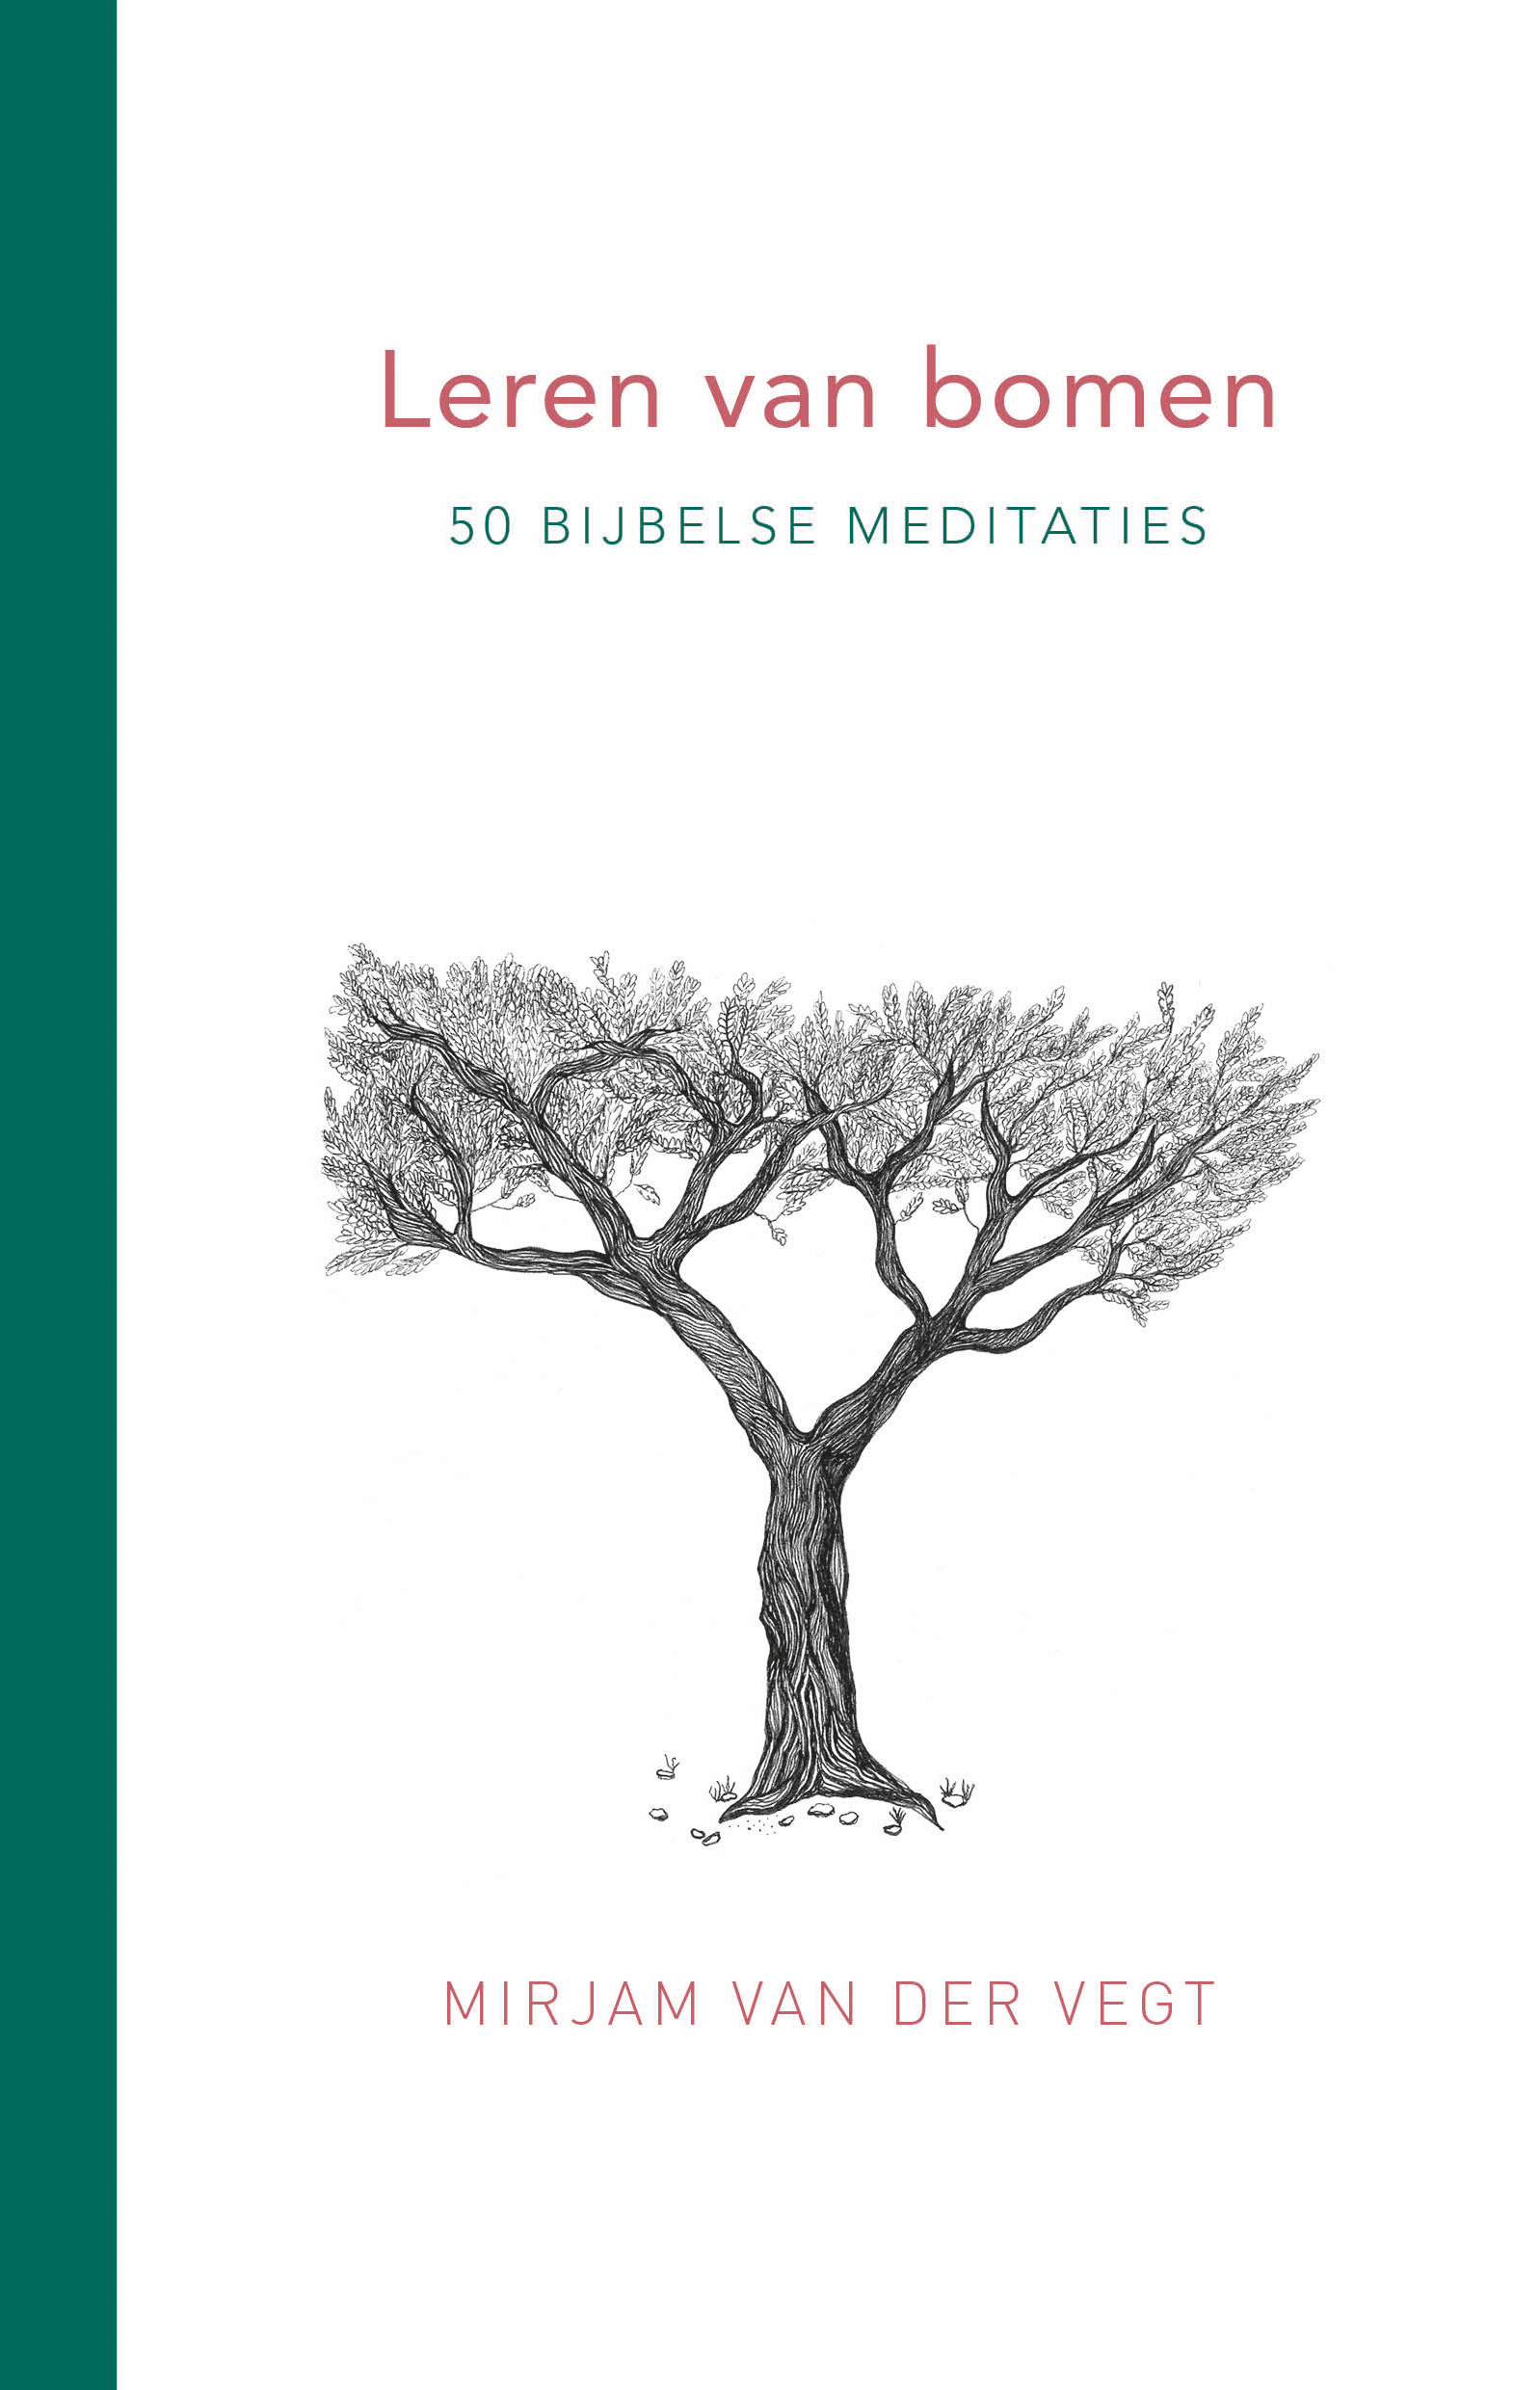 leren van bomen bijbelse meditatie